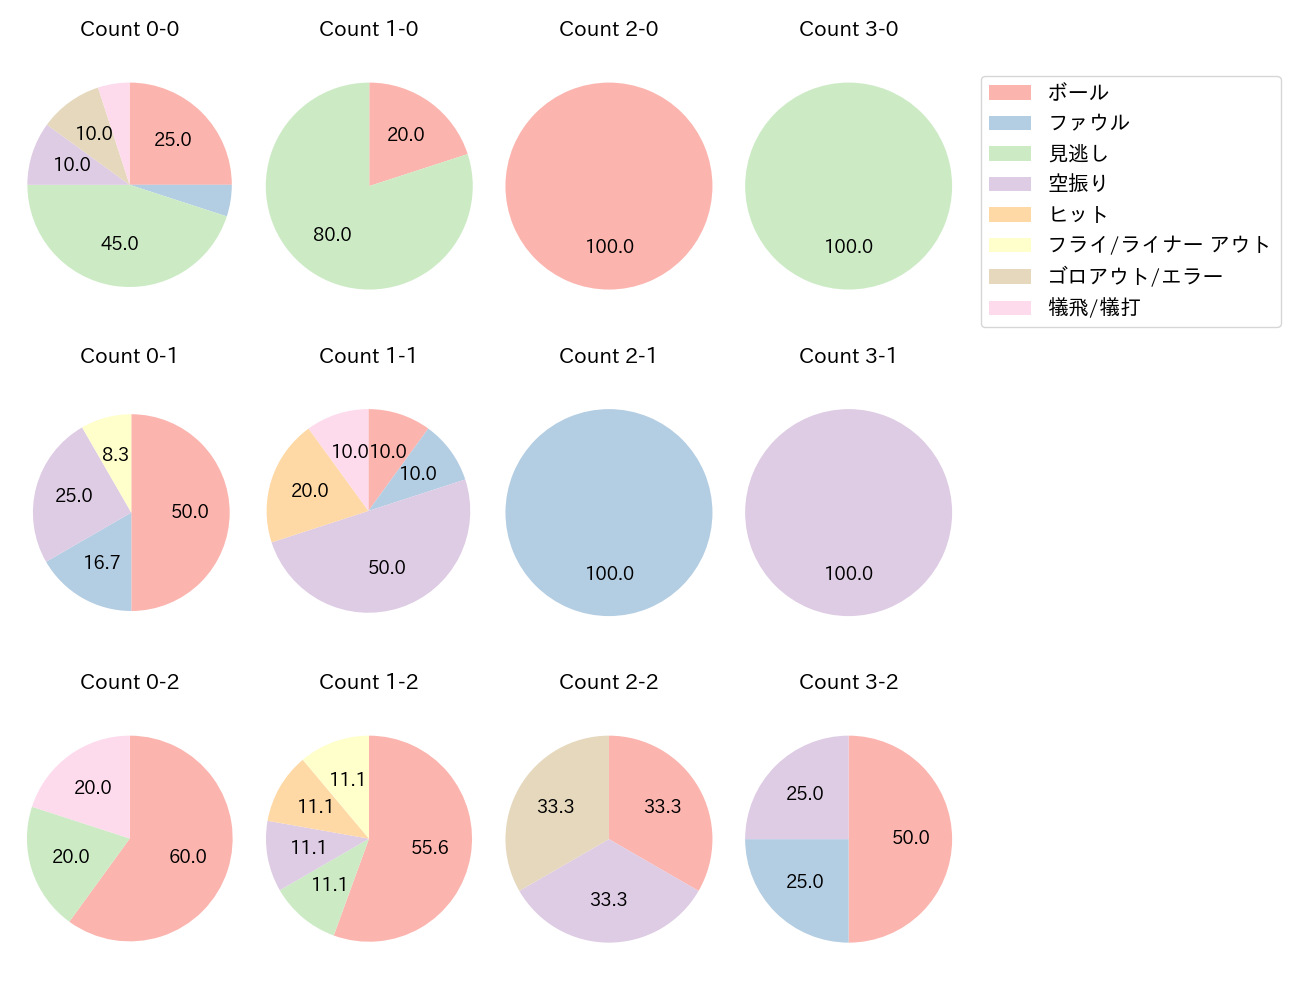 上茶谷 大河の球数分布(2022年レギュラーシーズン全試合)